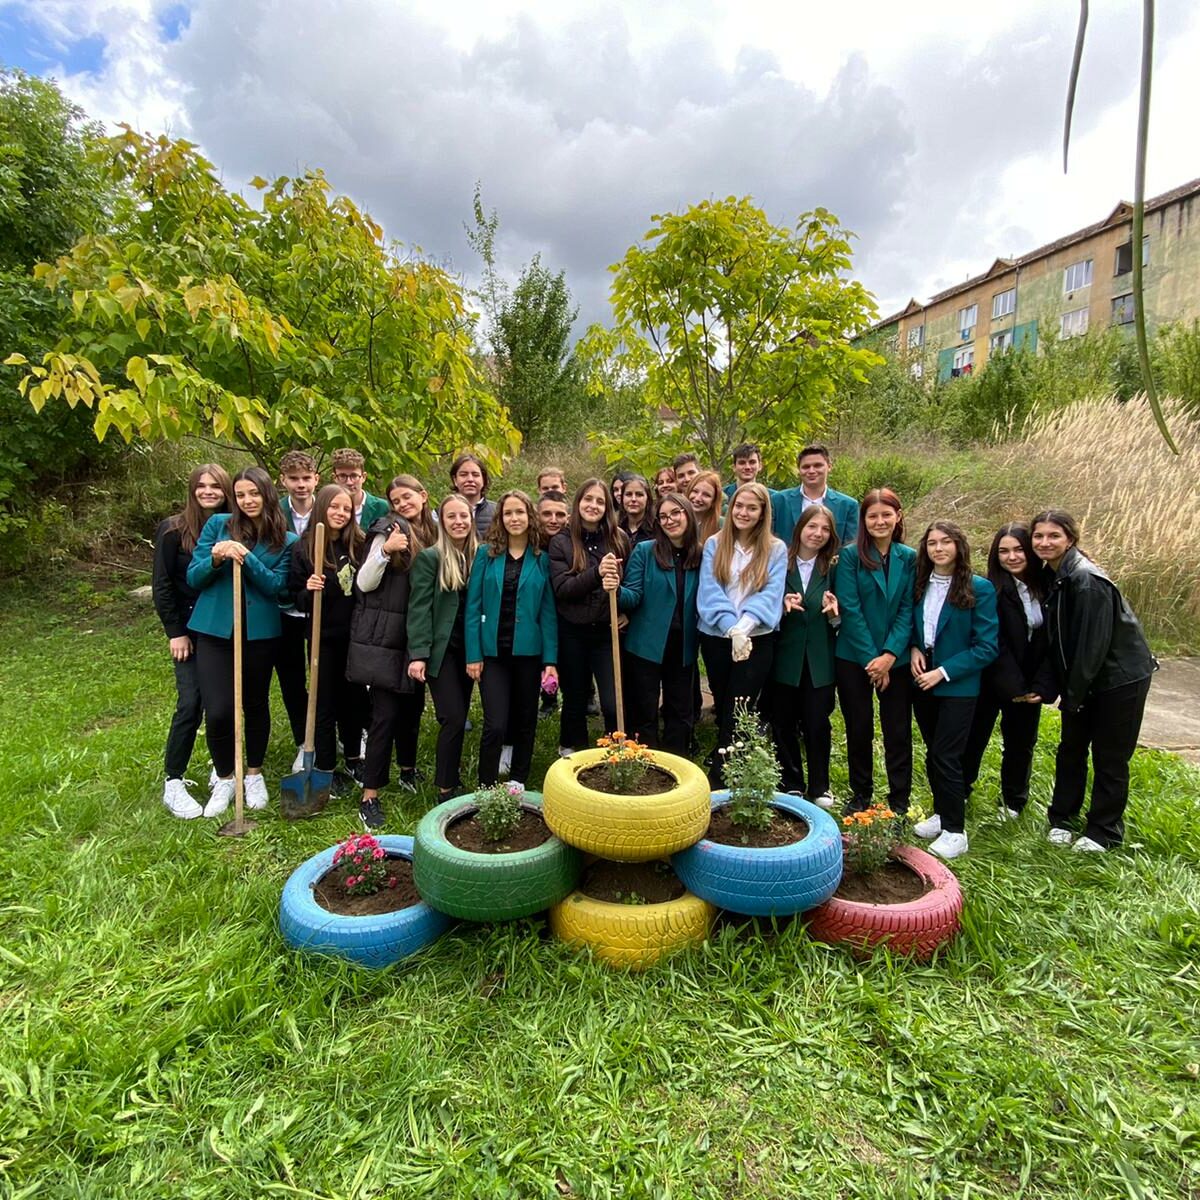 FOTO Liceul ”Axente Sever” prinde culoare – Elevii au reamenajat spațiile verzi